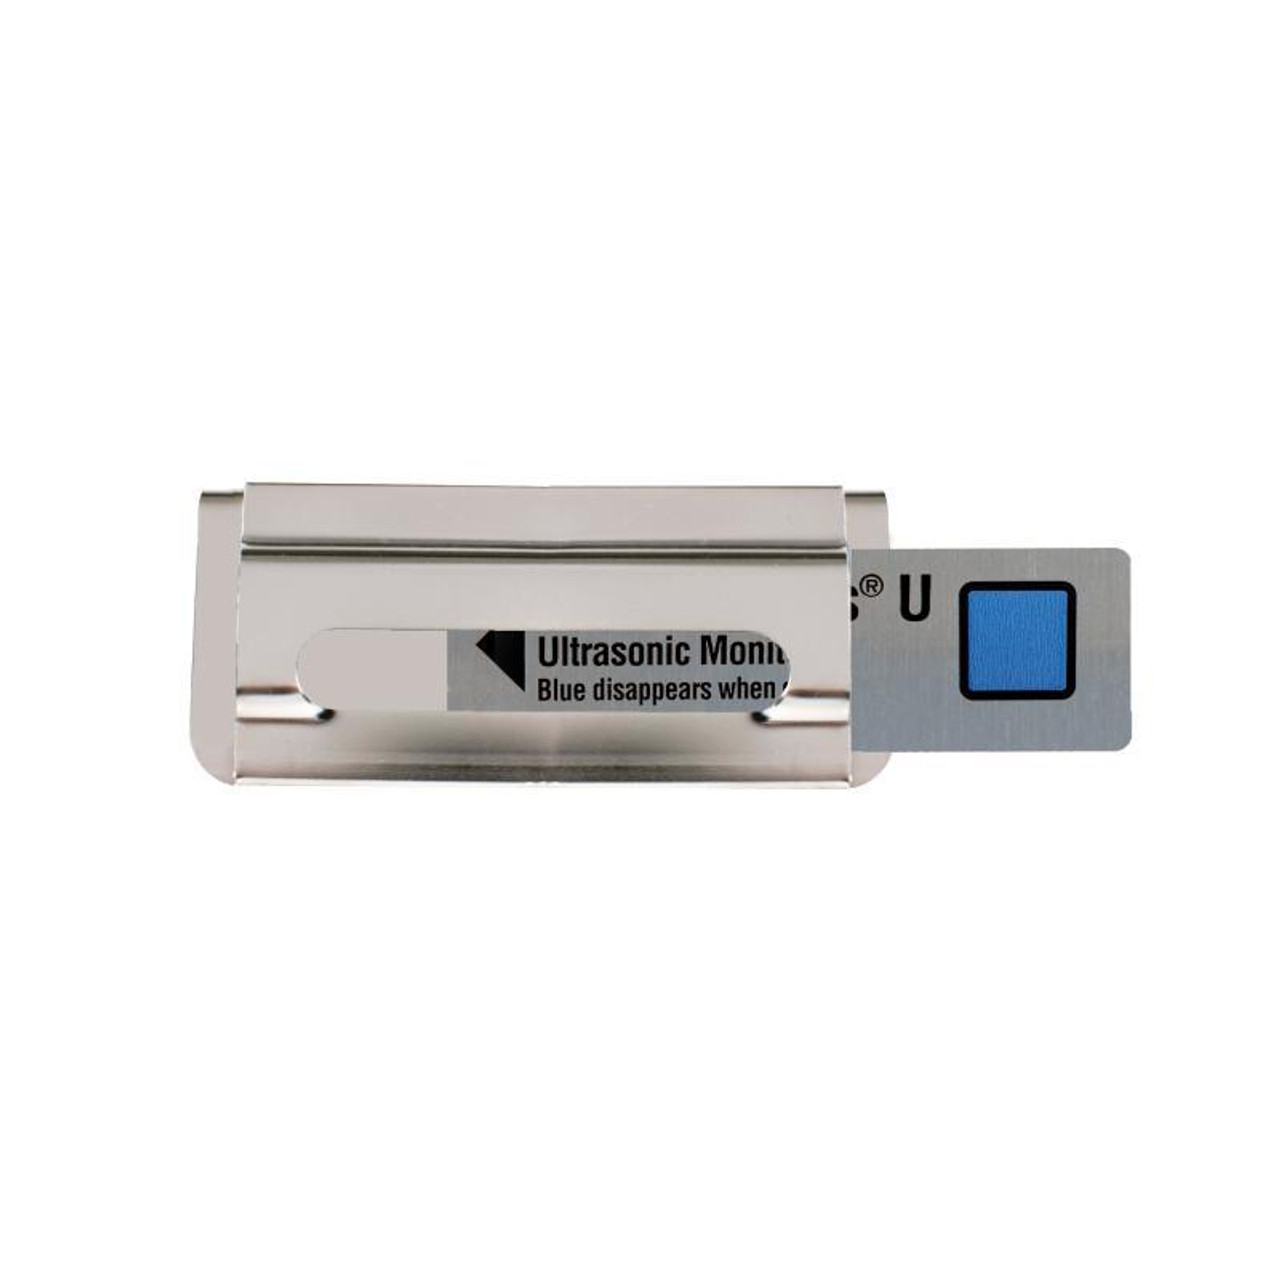 Ultrasonic Cleaning Monitor, 50 PCS, Hu-Friedy, IMS-1200U